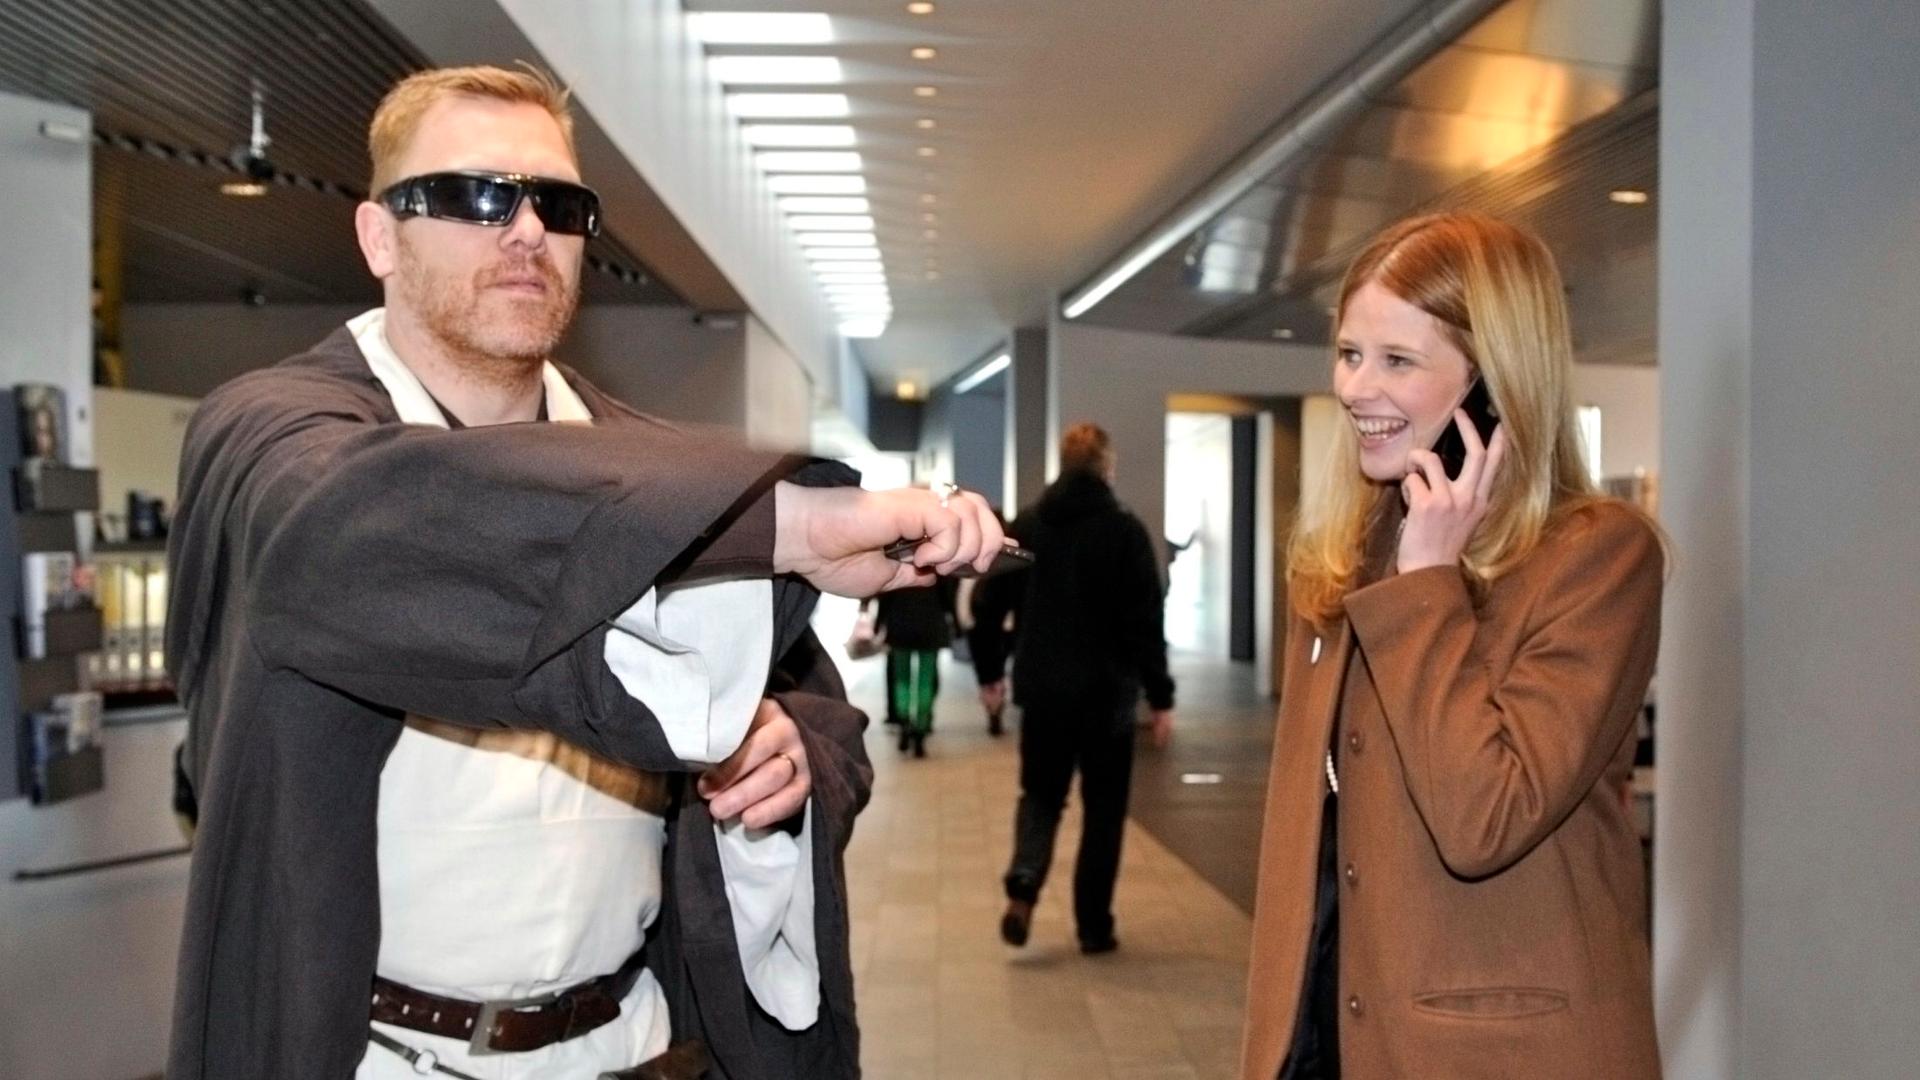 Reykjavik mayor Jón Gnarr decked out as Obi-Wan Kenobi at a political event in Reykjavik, Iceland.